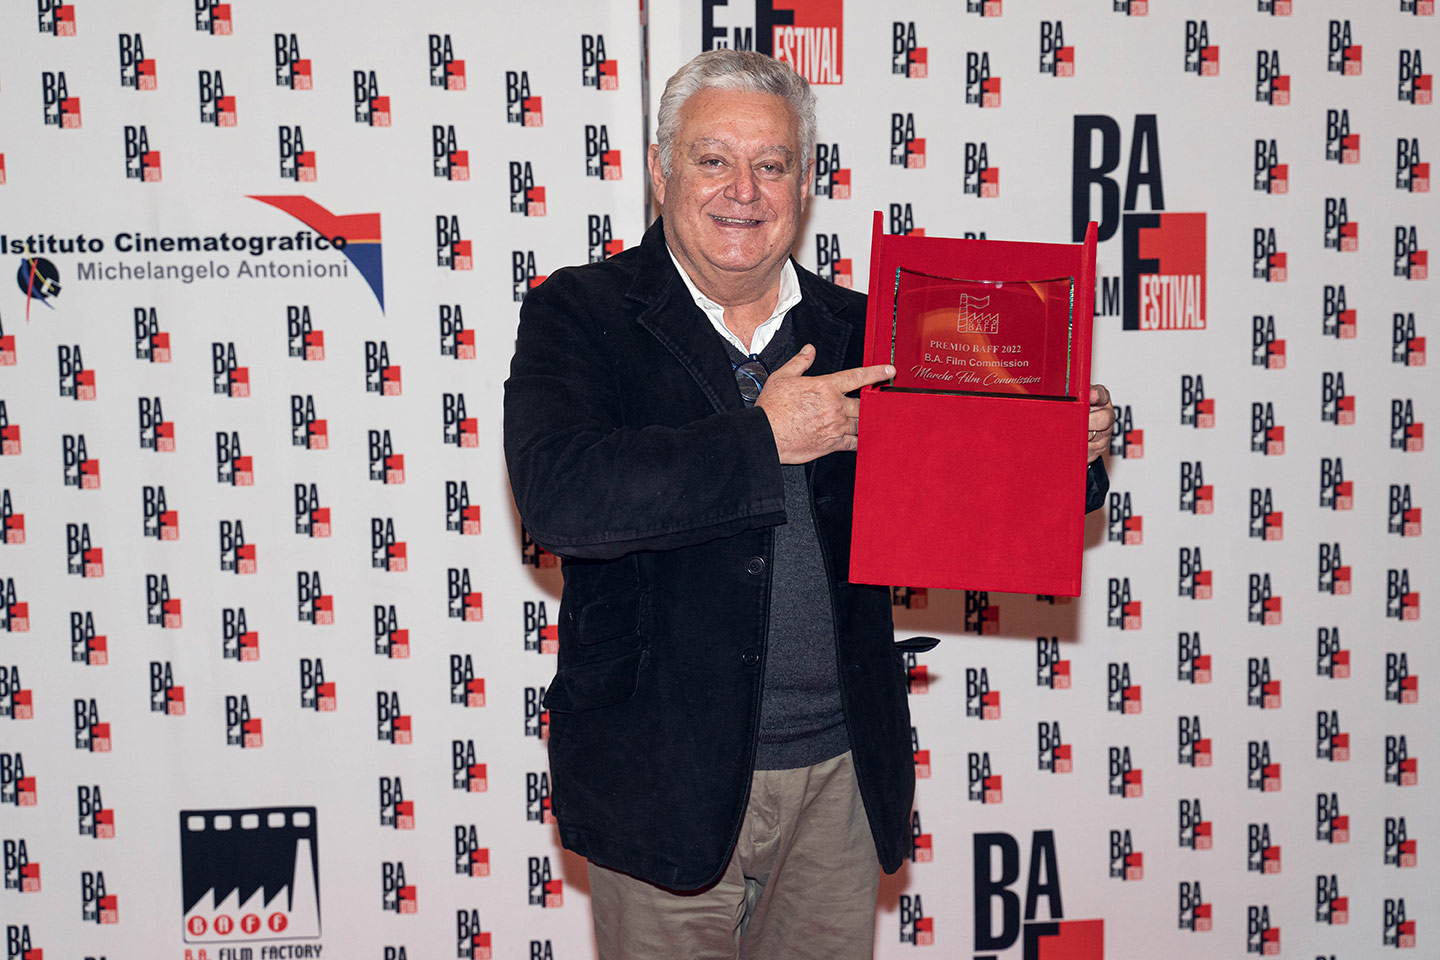 Serata Finale Premio Baff 2022 – B.A. Fim Commission Francesco Gesualdi, Marche Film Commission